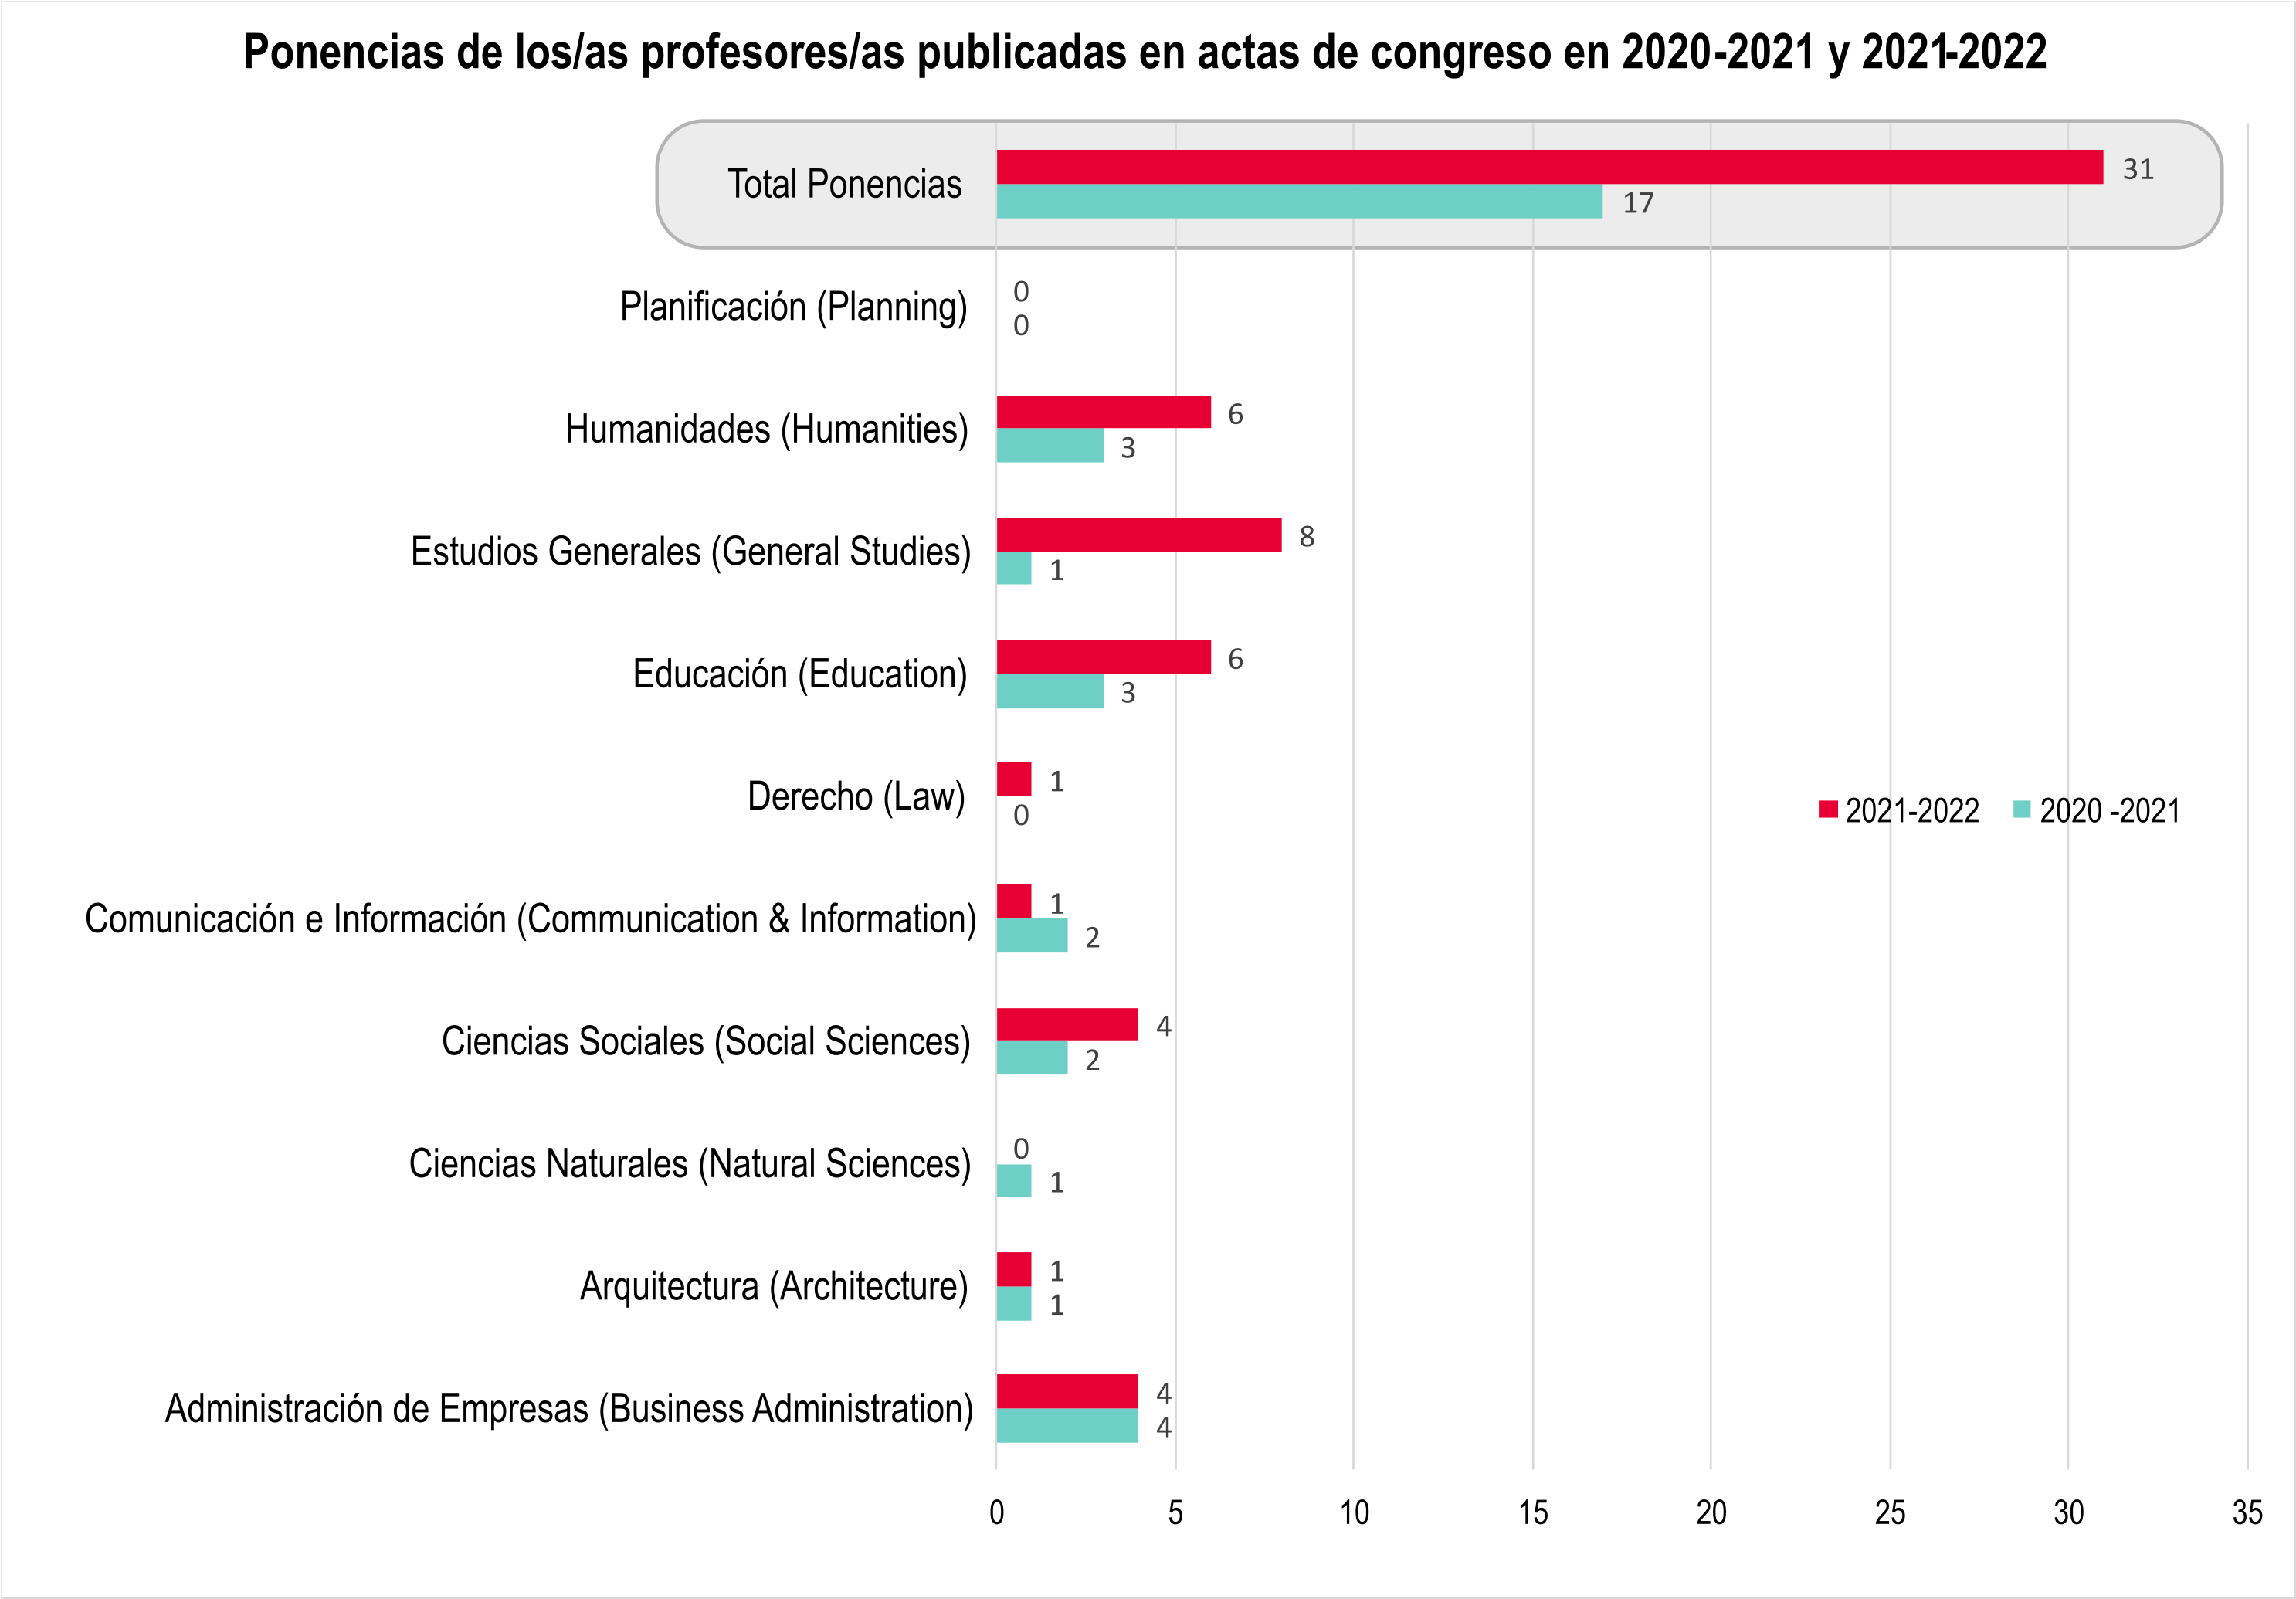 Gráfica de barra que muestra la cantidad de ponencias de profesores publicadas en actas de congreso en 2020-21 y 2021-22 (un total de 31 ponencias publicadas en 2021-2022 y 17 ponencias en 2020-2021)